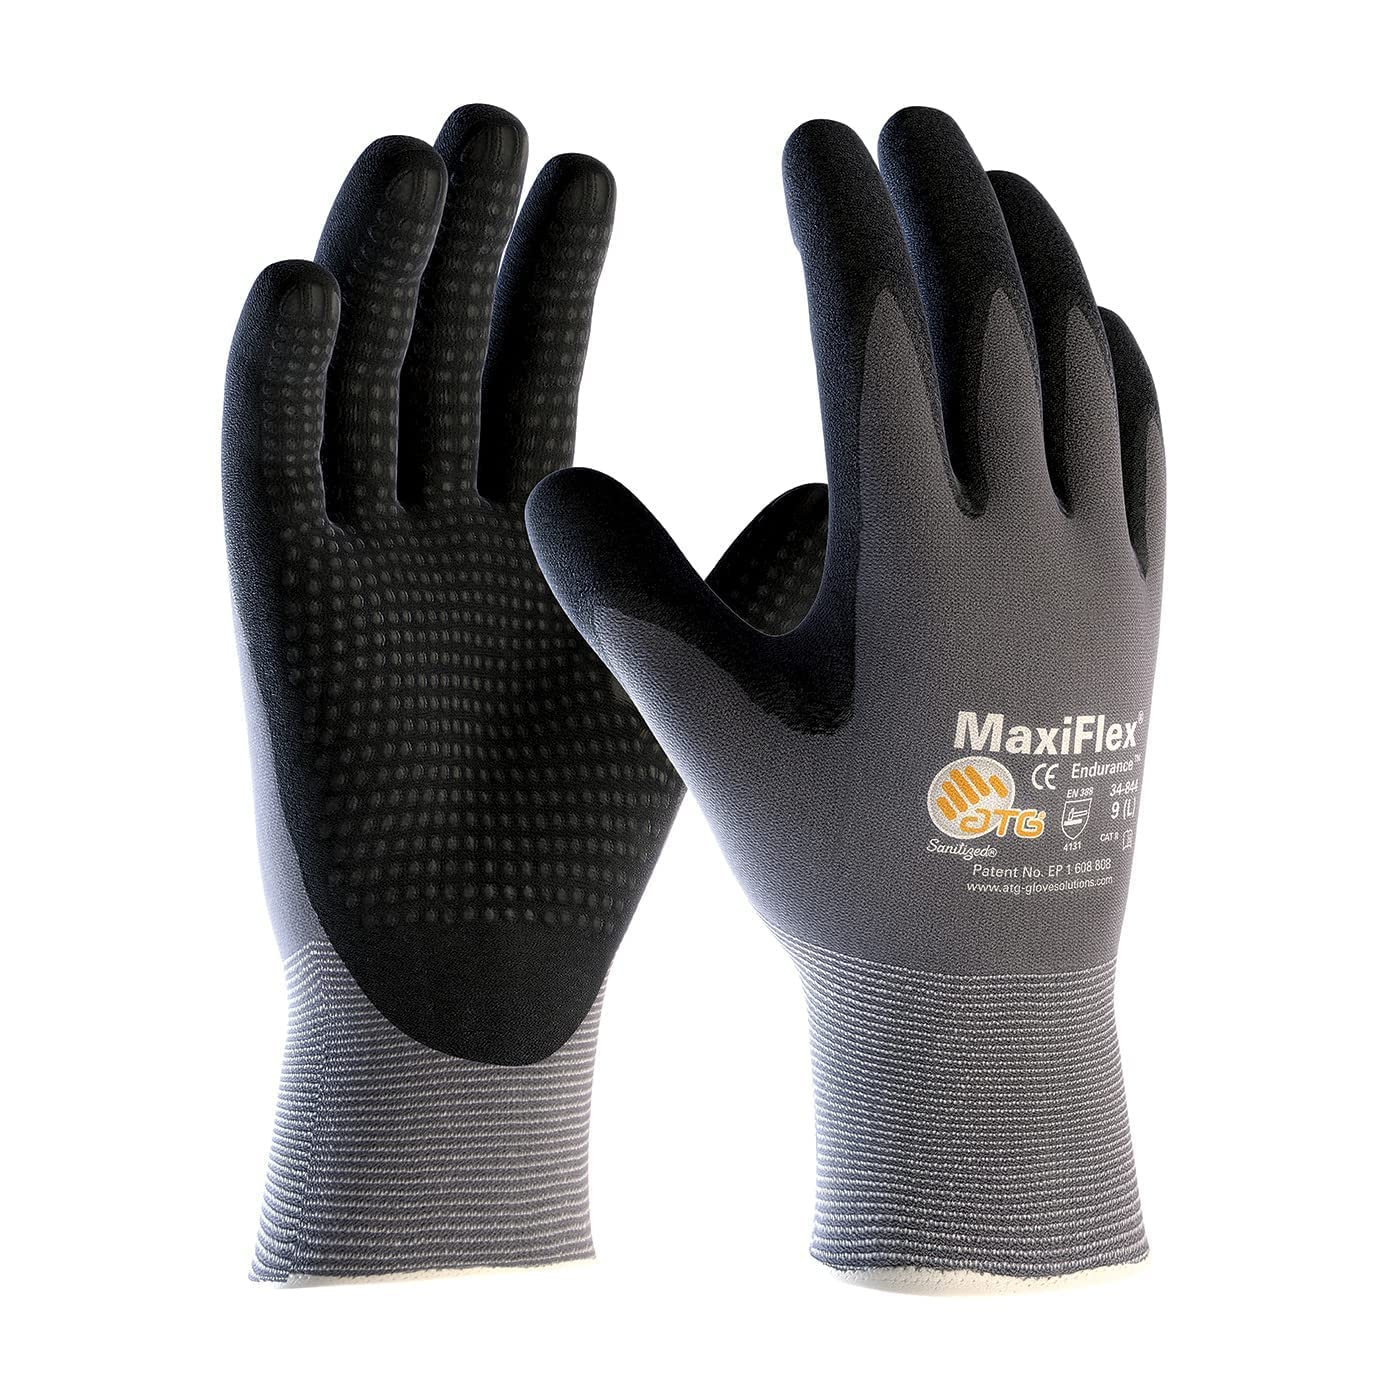 ATG Pack MaxiFlex Endurance 34-844 Бесшовные вязаные нейлоновые рабочие перчатки с нитриловым покрытием на ладони и пальцах